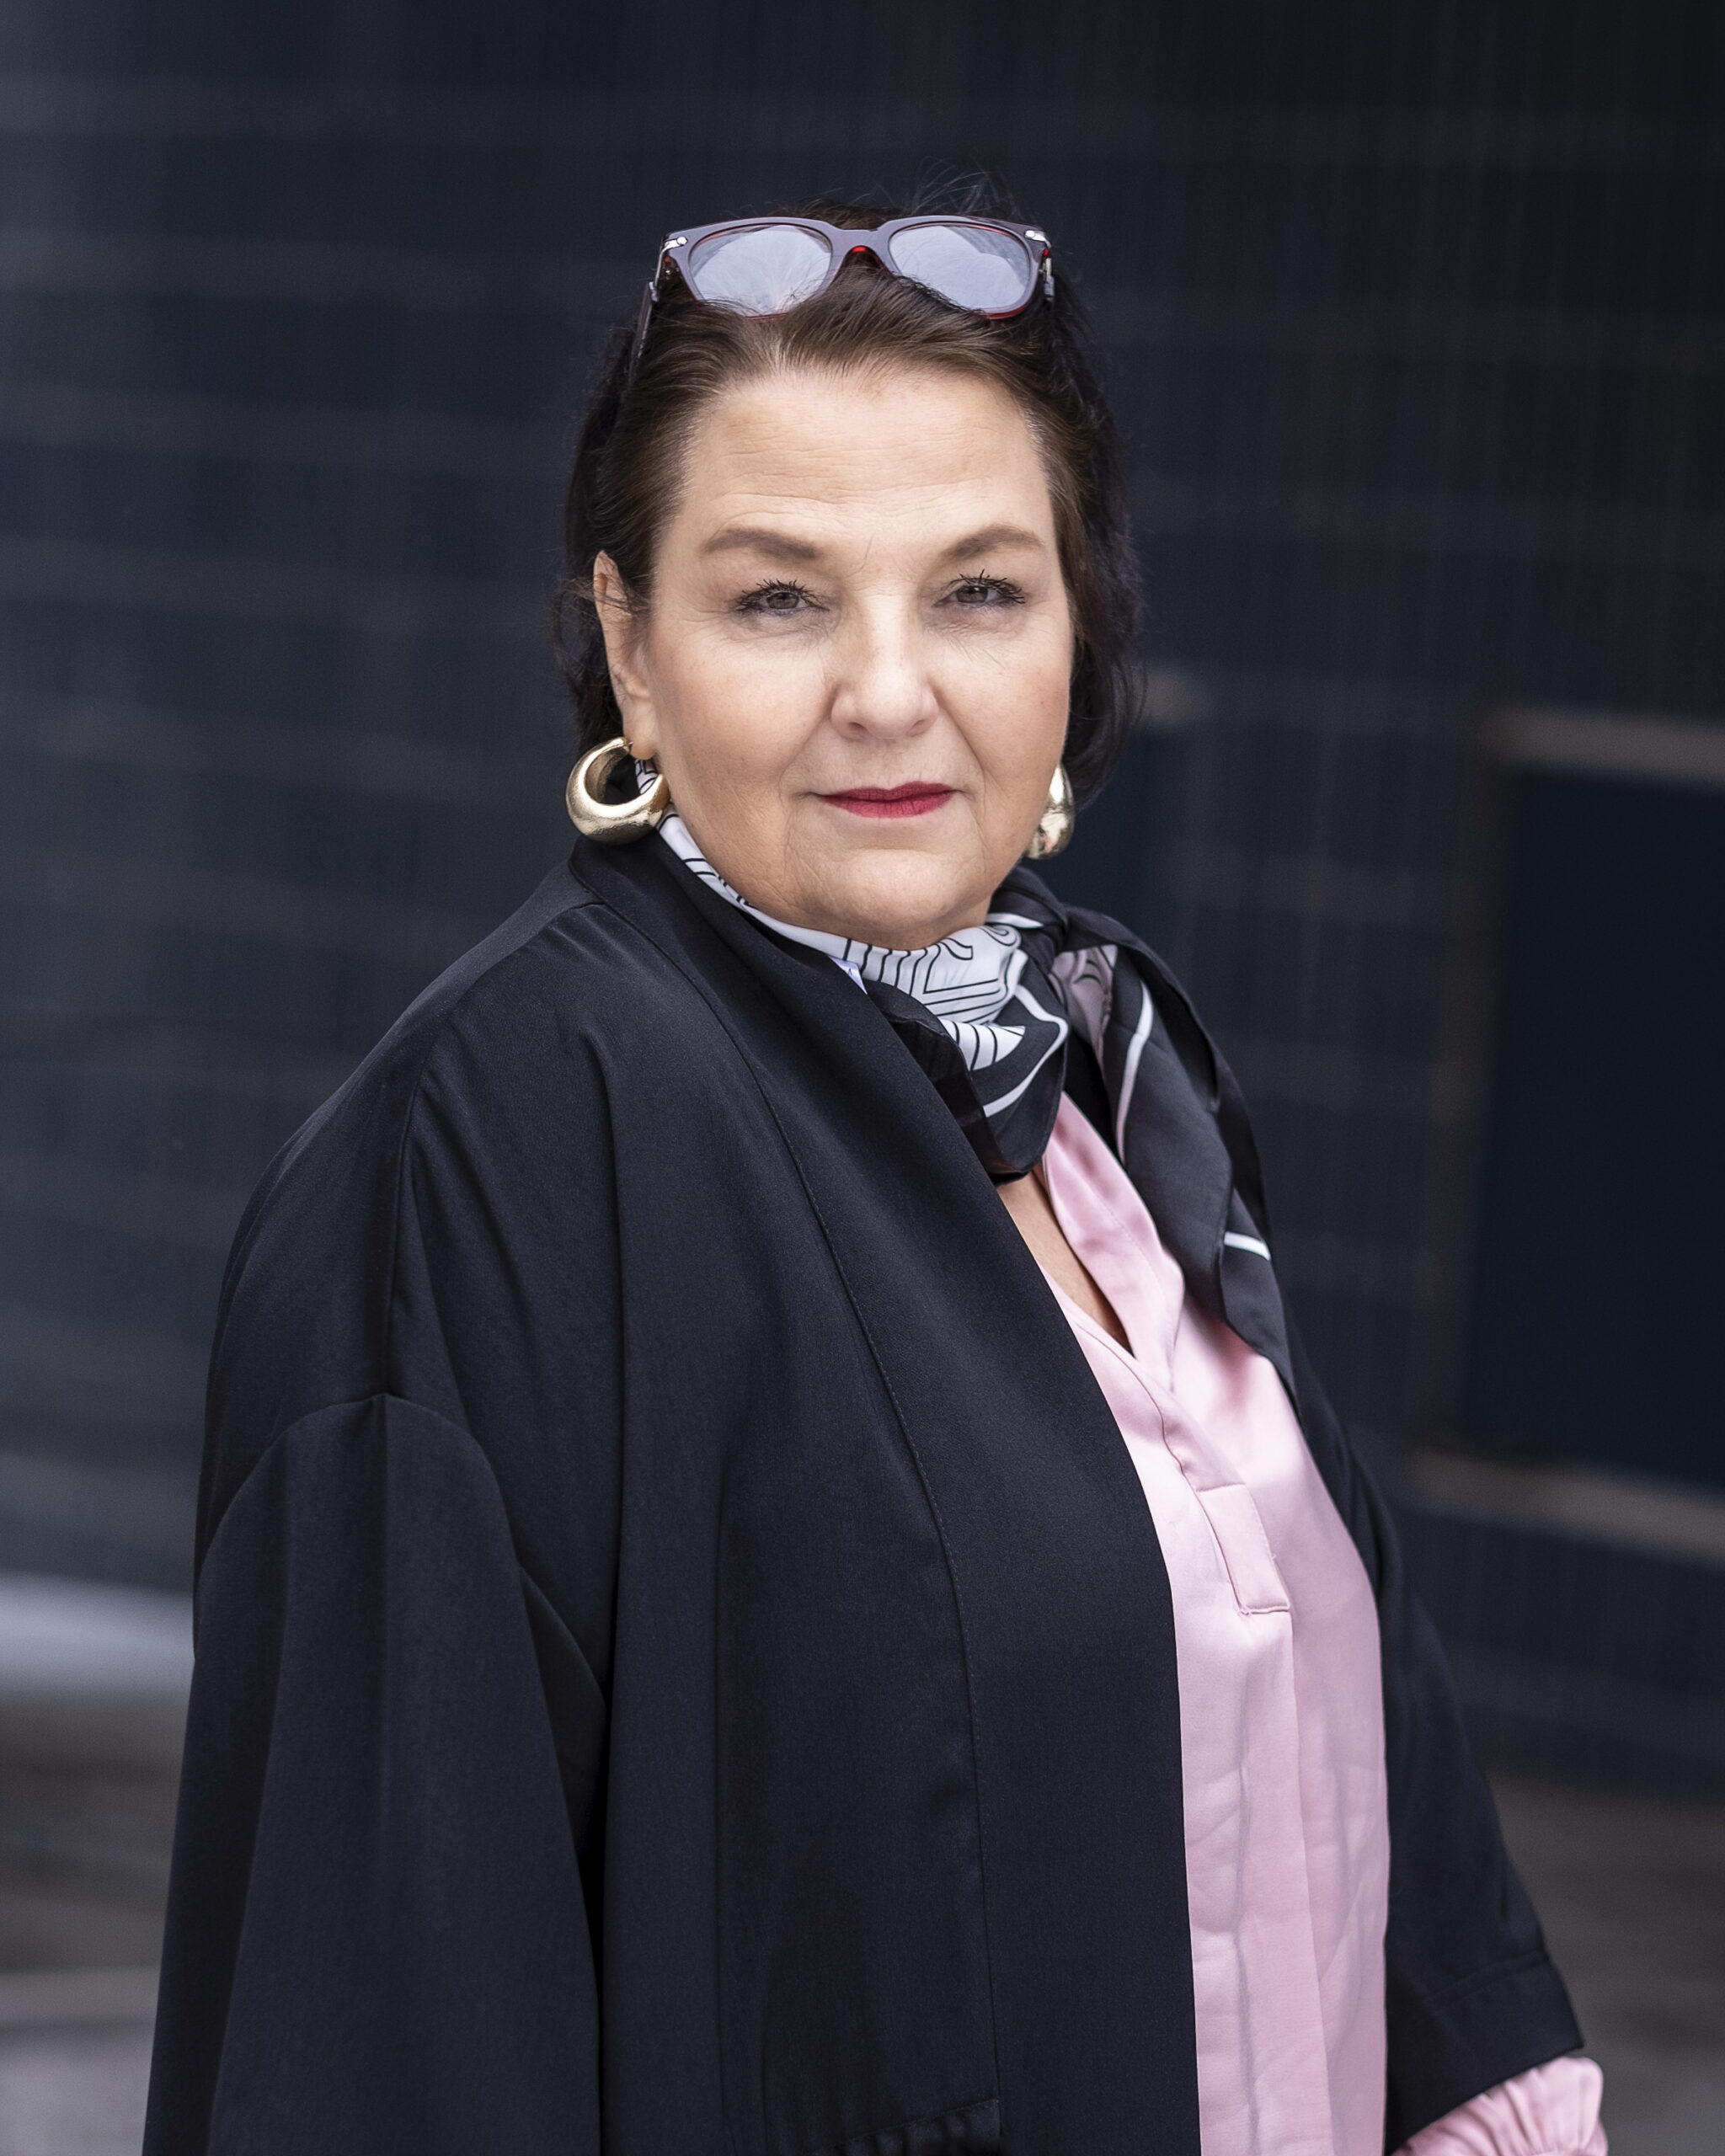 Anna-Lena Norberg